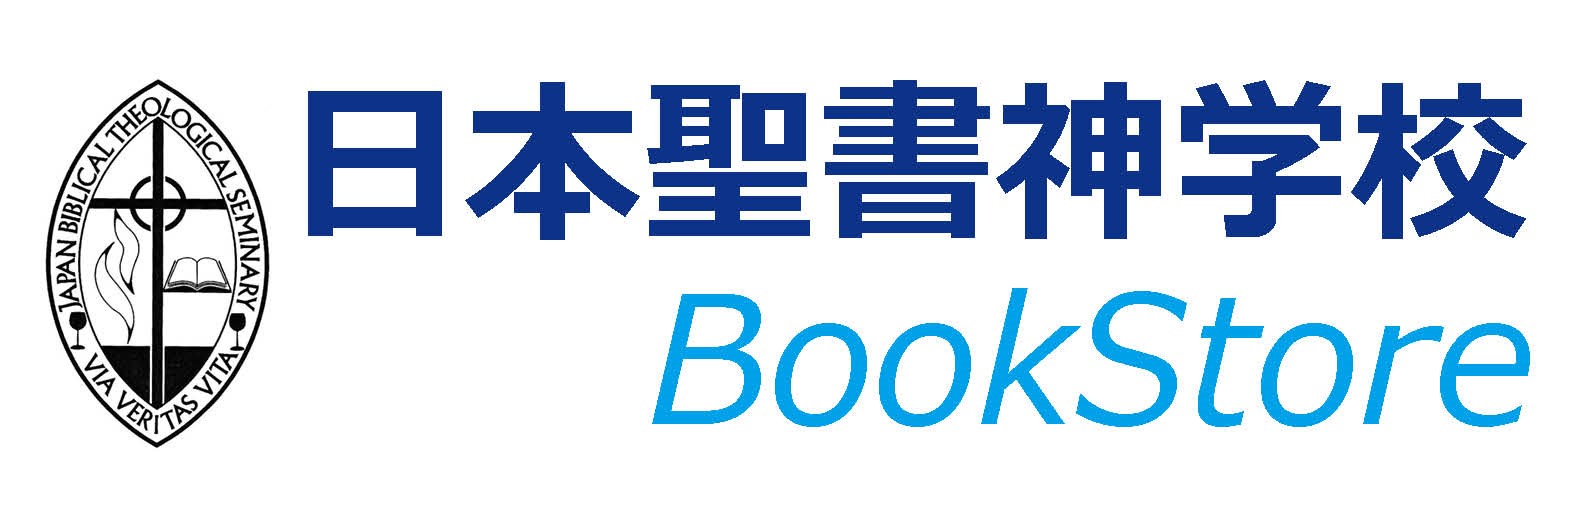 日本聖書神学校書籍販売コーナー